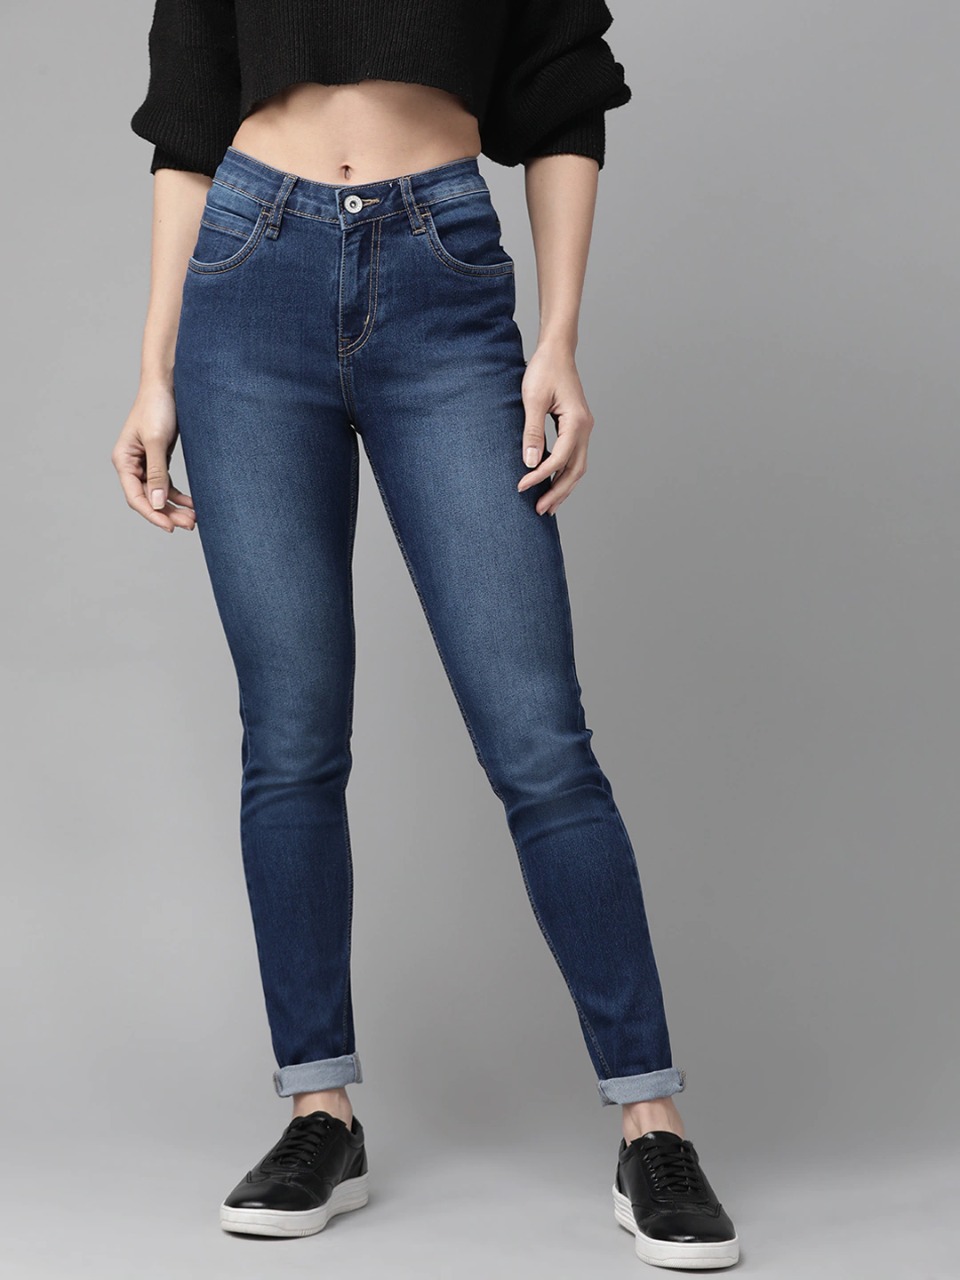 Update 105+ roadster jeans for women best